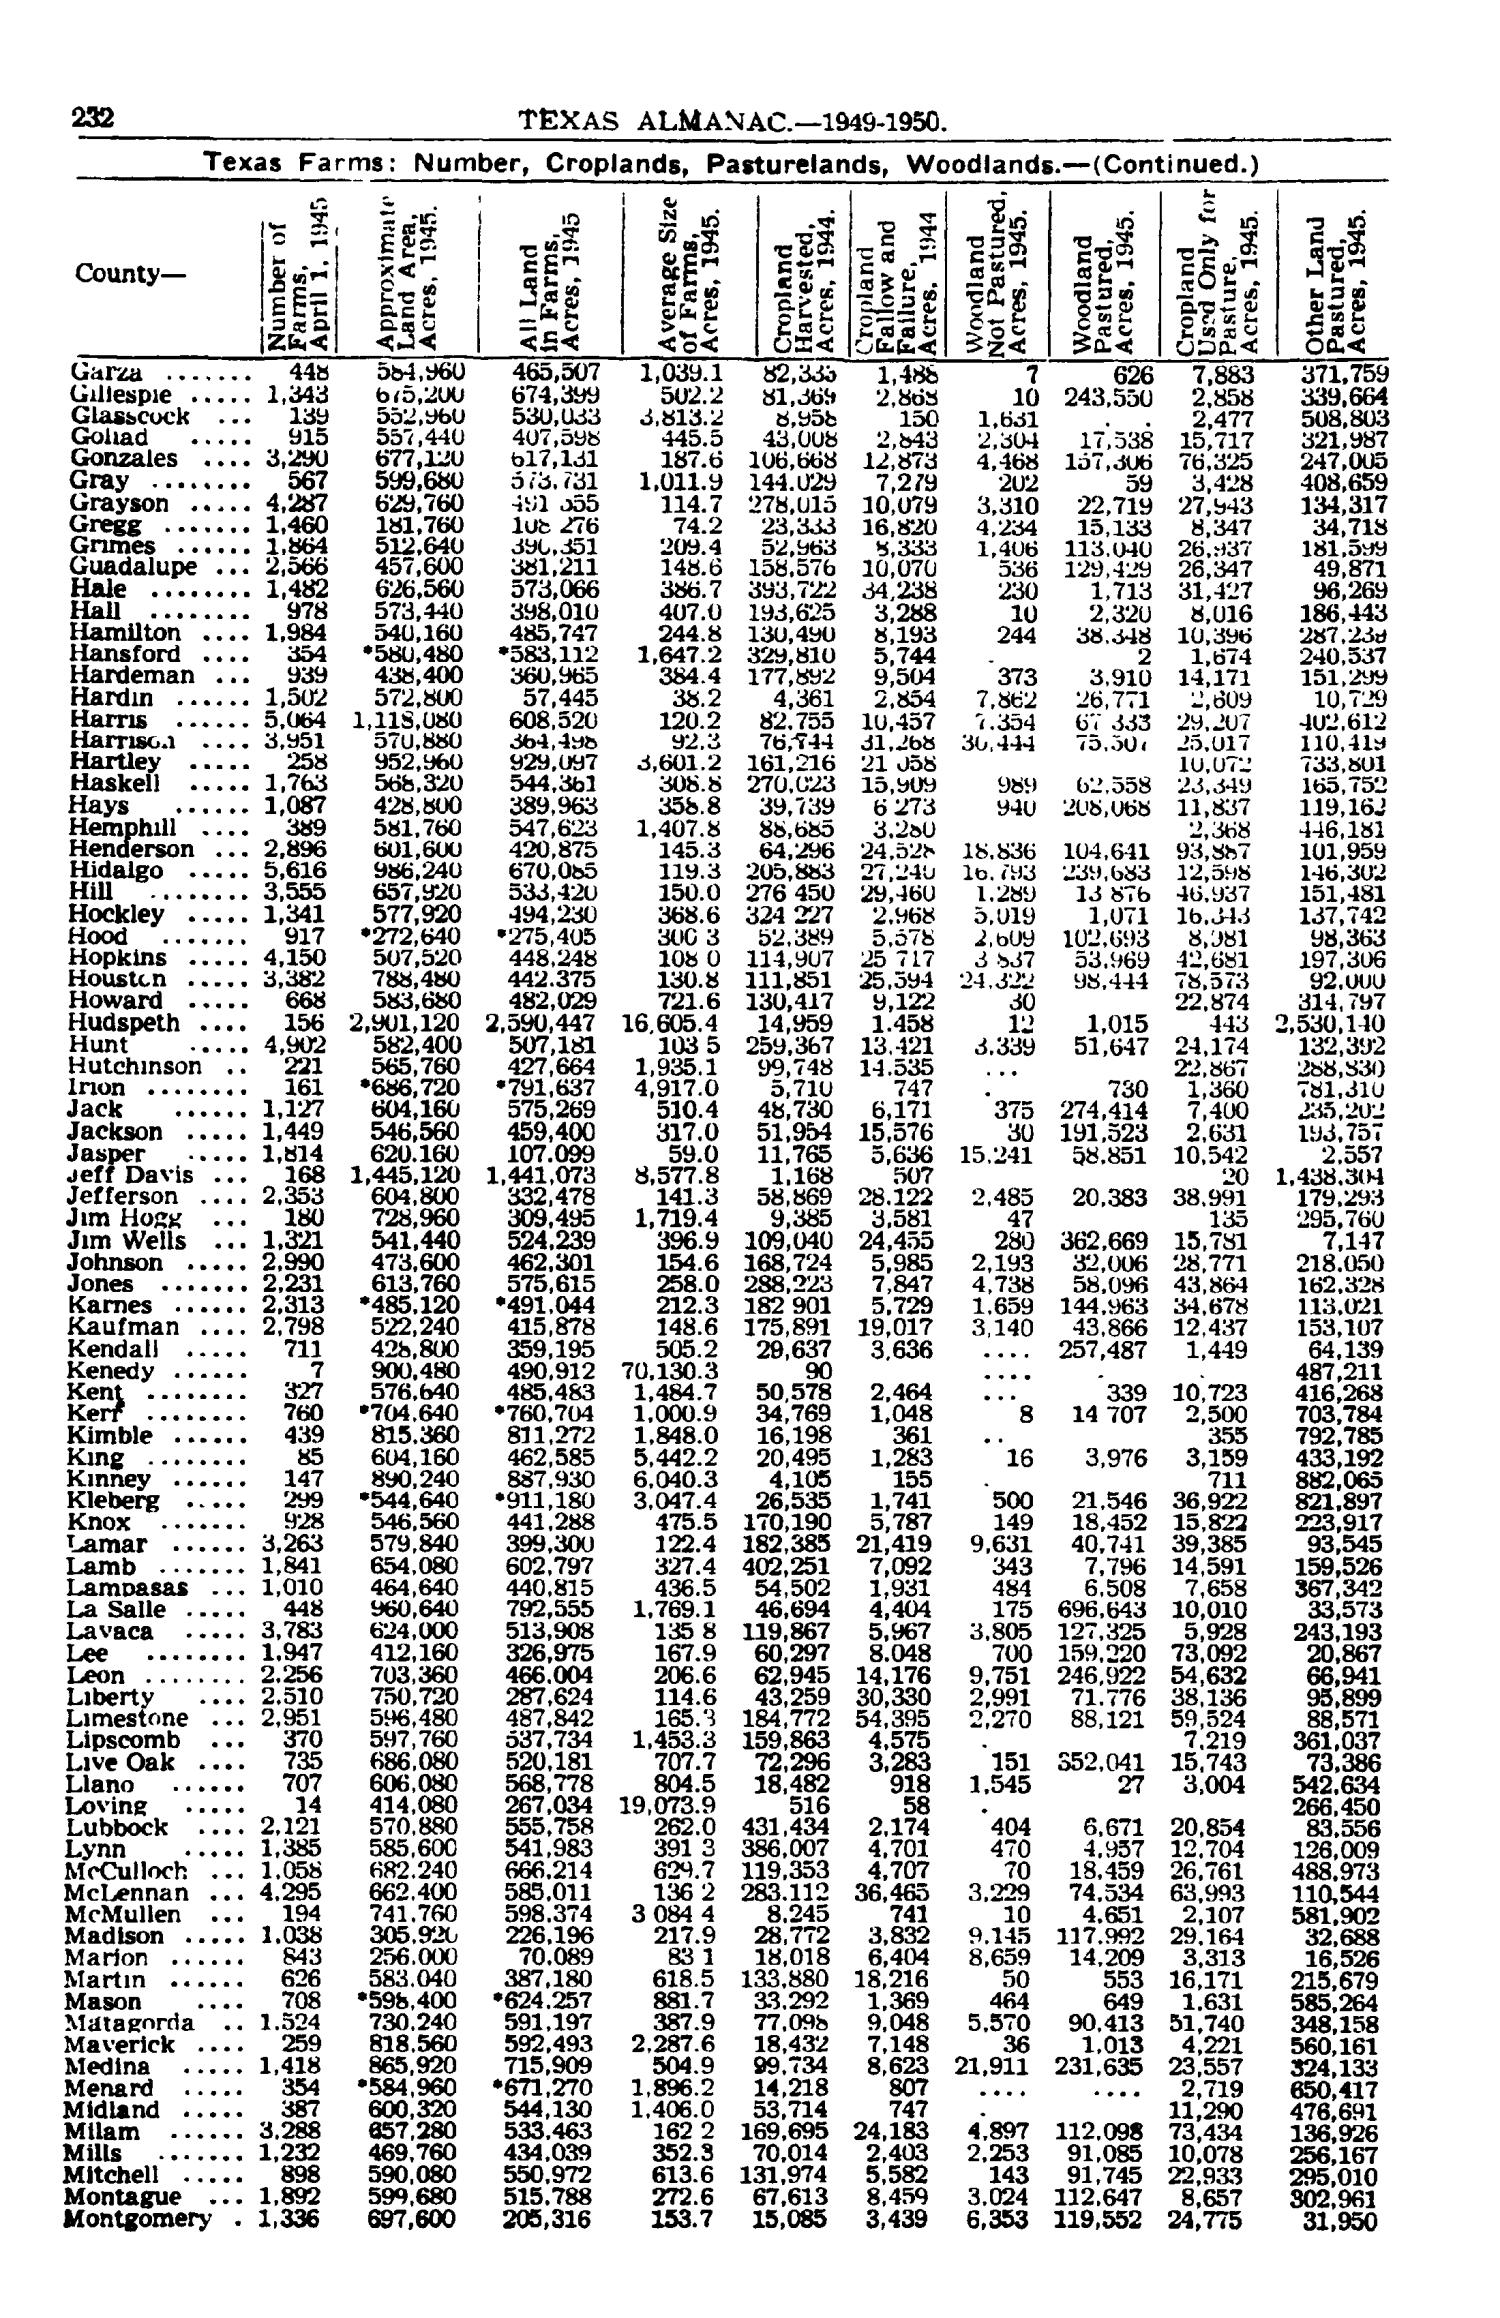 Texas Almanac, 1949-1950
                                                
                                                    232
                                                